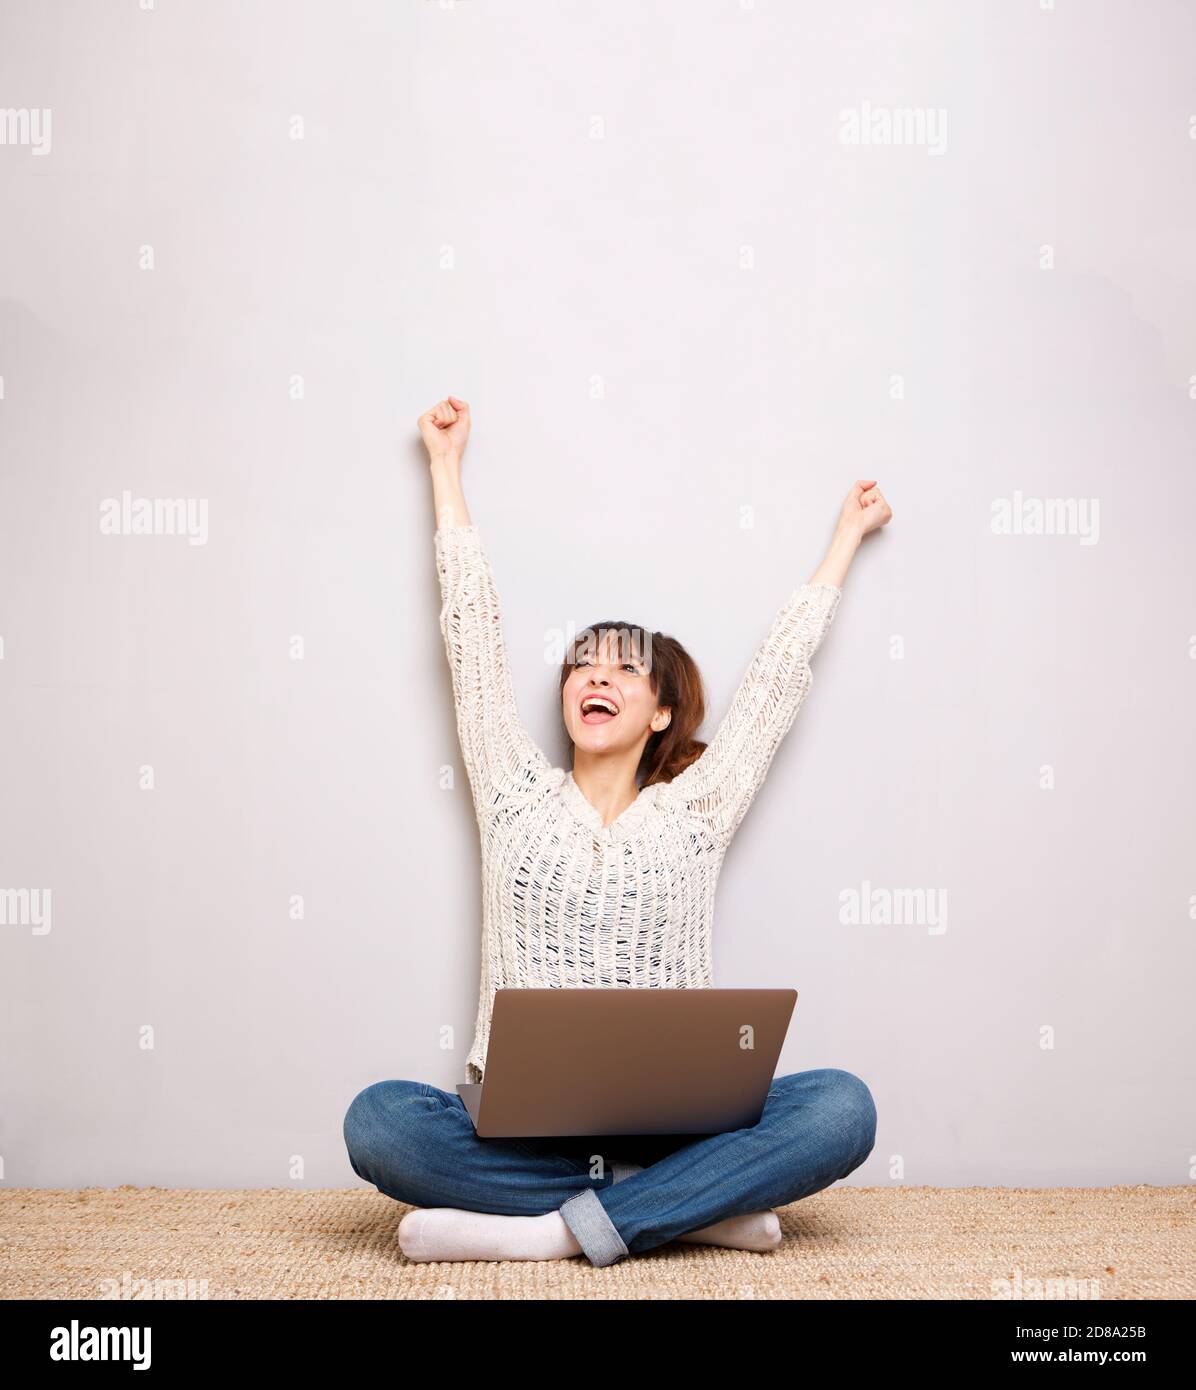 Porträt einer fröhlichen jungen Frau auf dem Boden mit sitzen Laptop und Hände angehoben Stockfoto